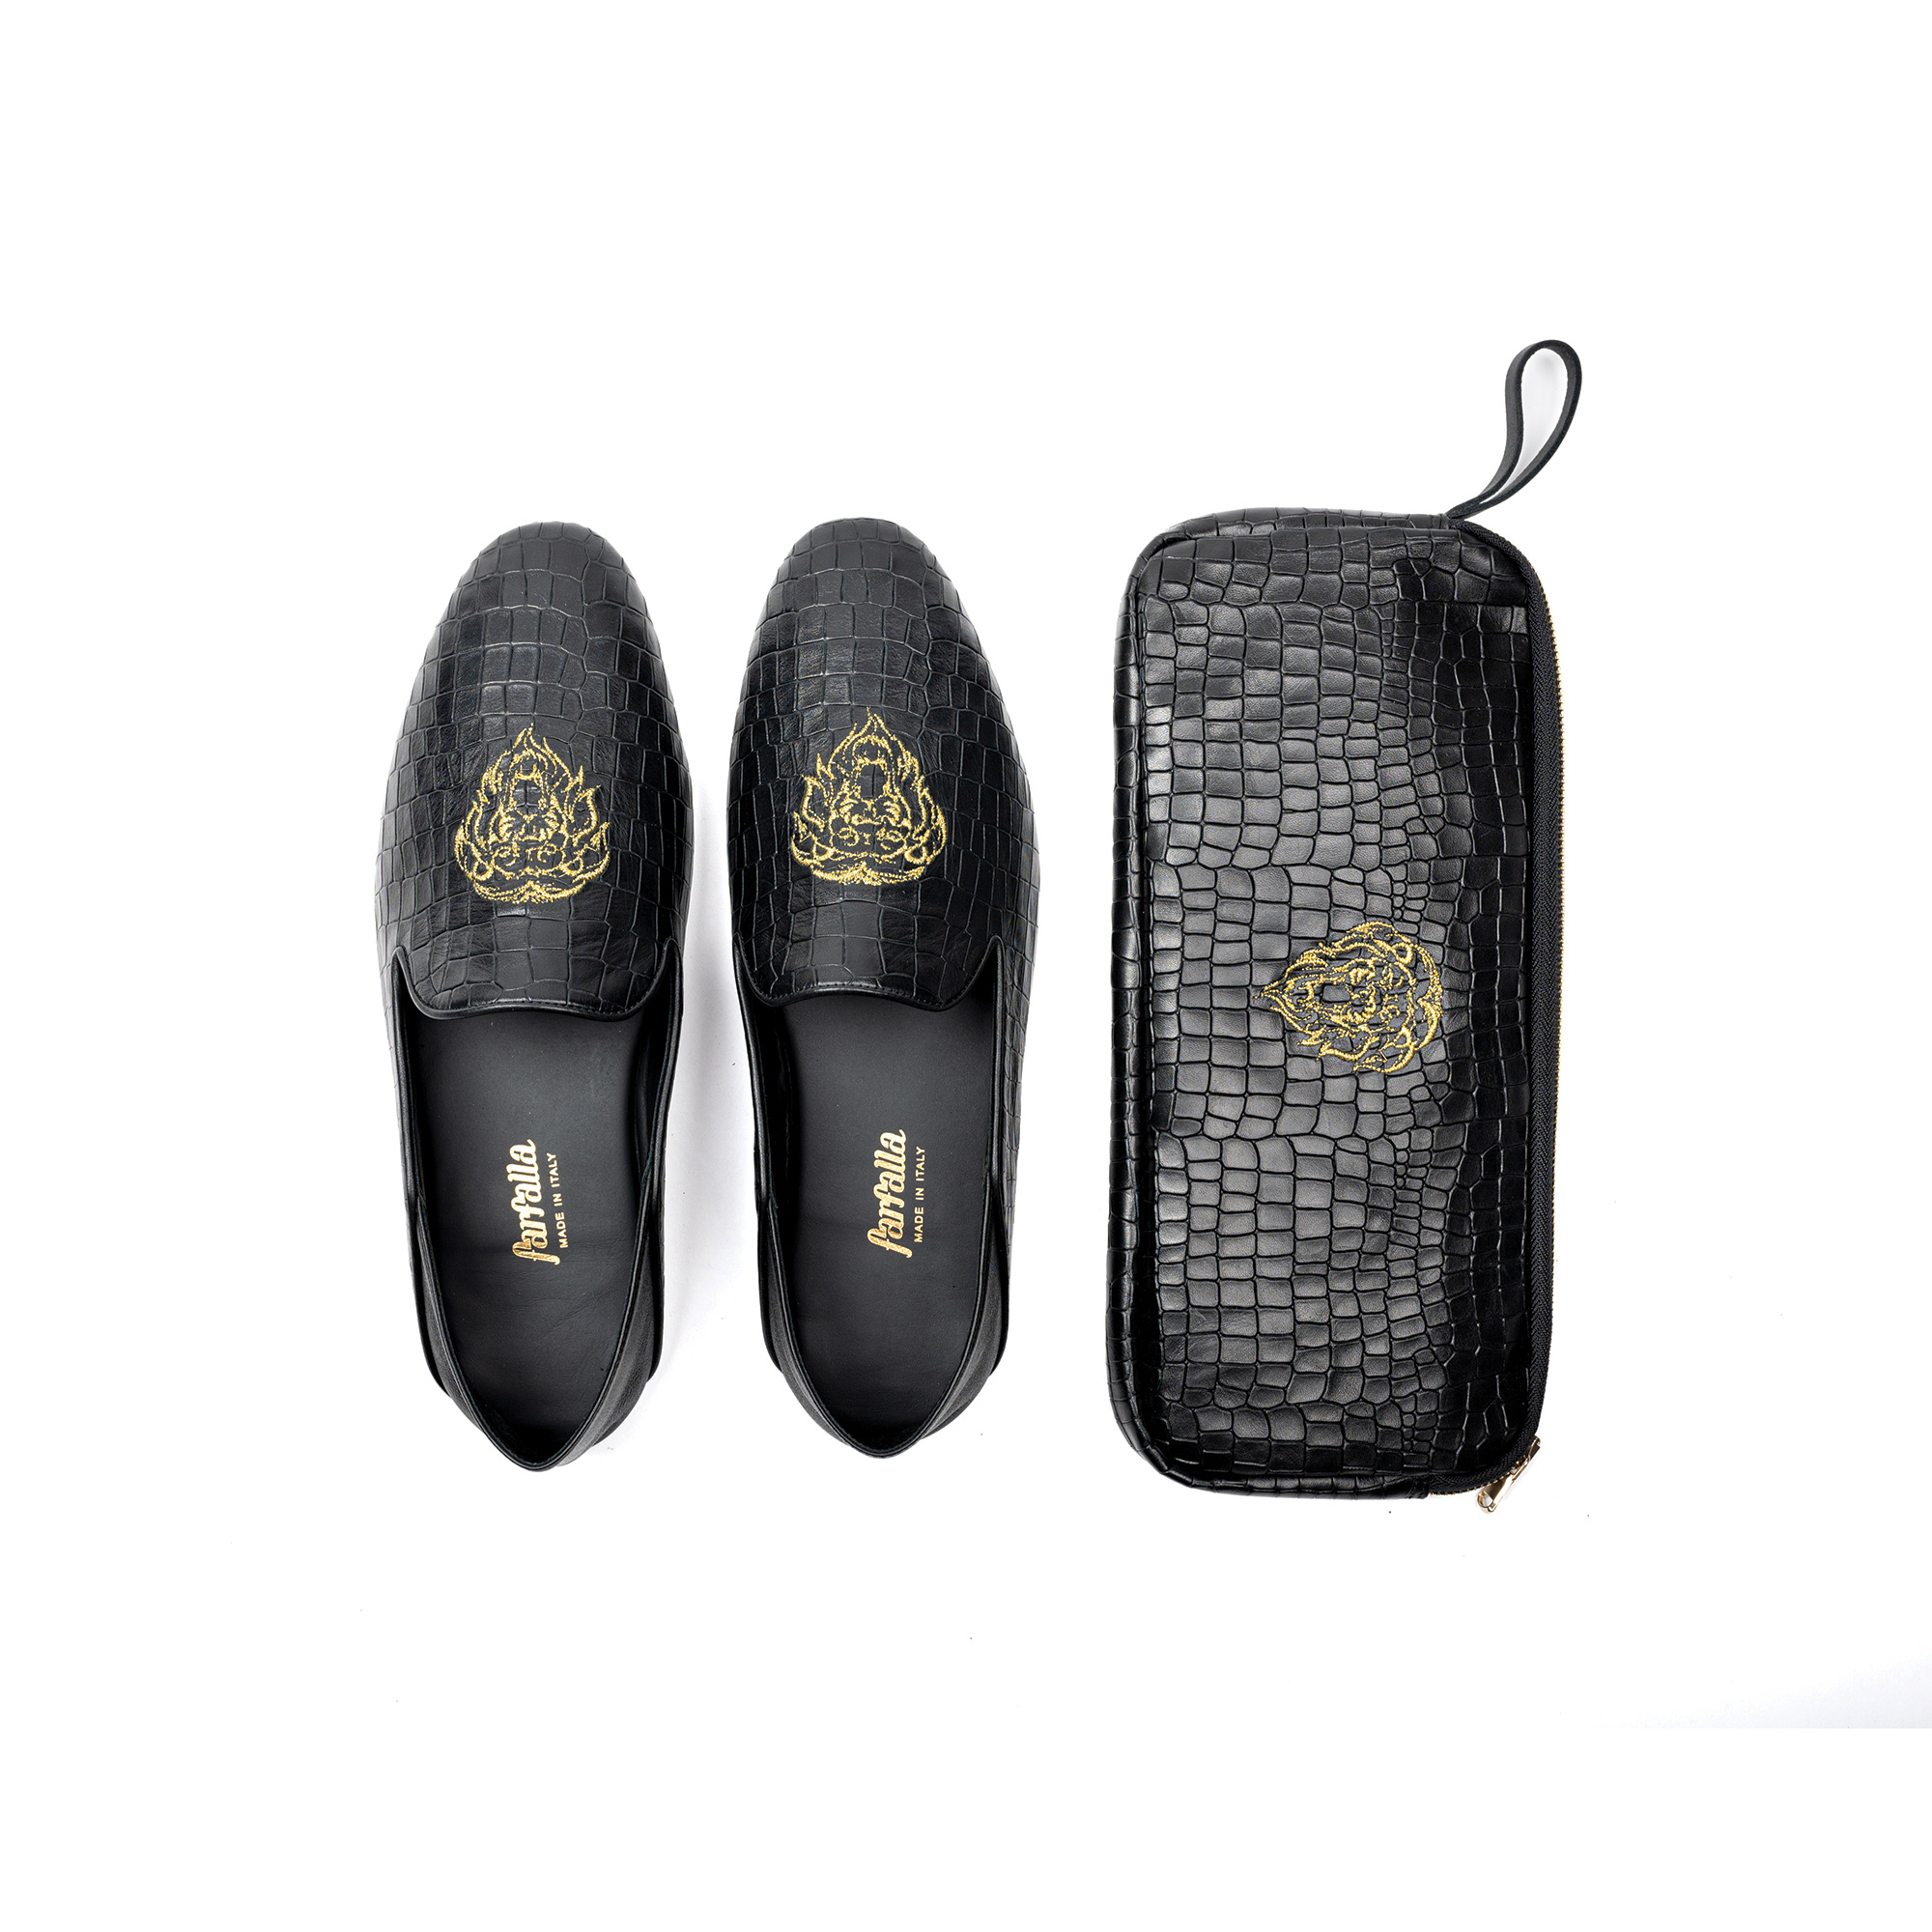 Pantofola interno lusso chiusa in pelle stampato cocco - Farfalla italian slippers